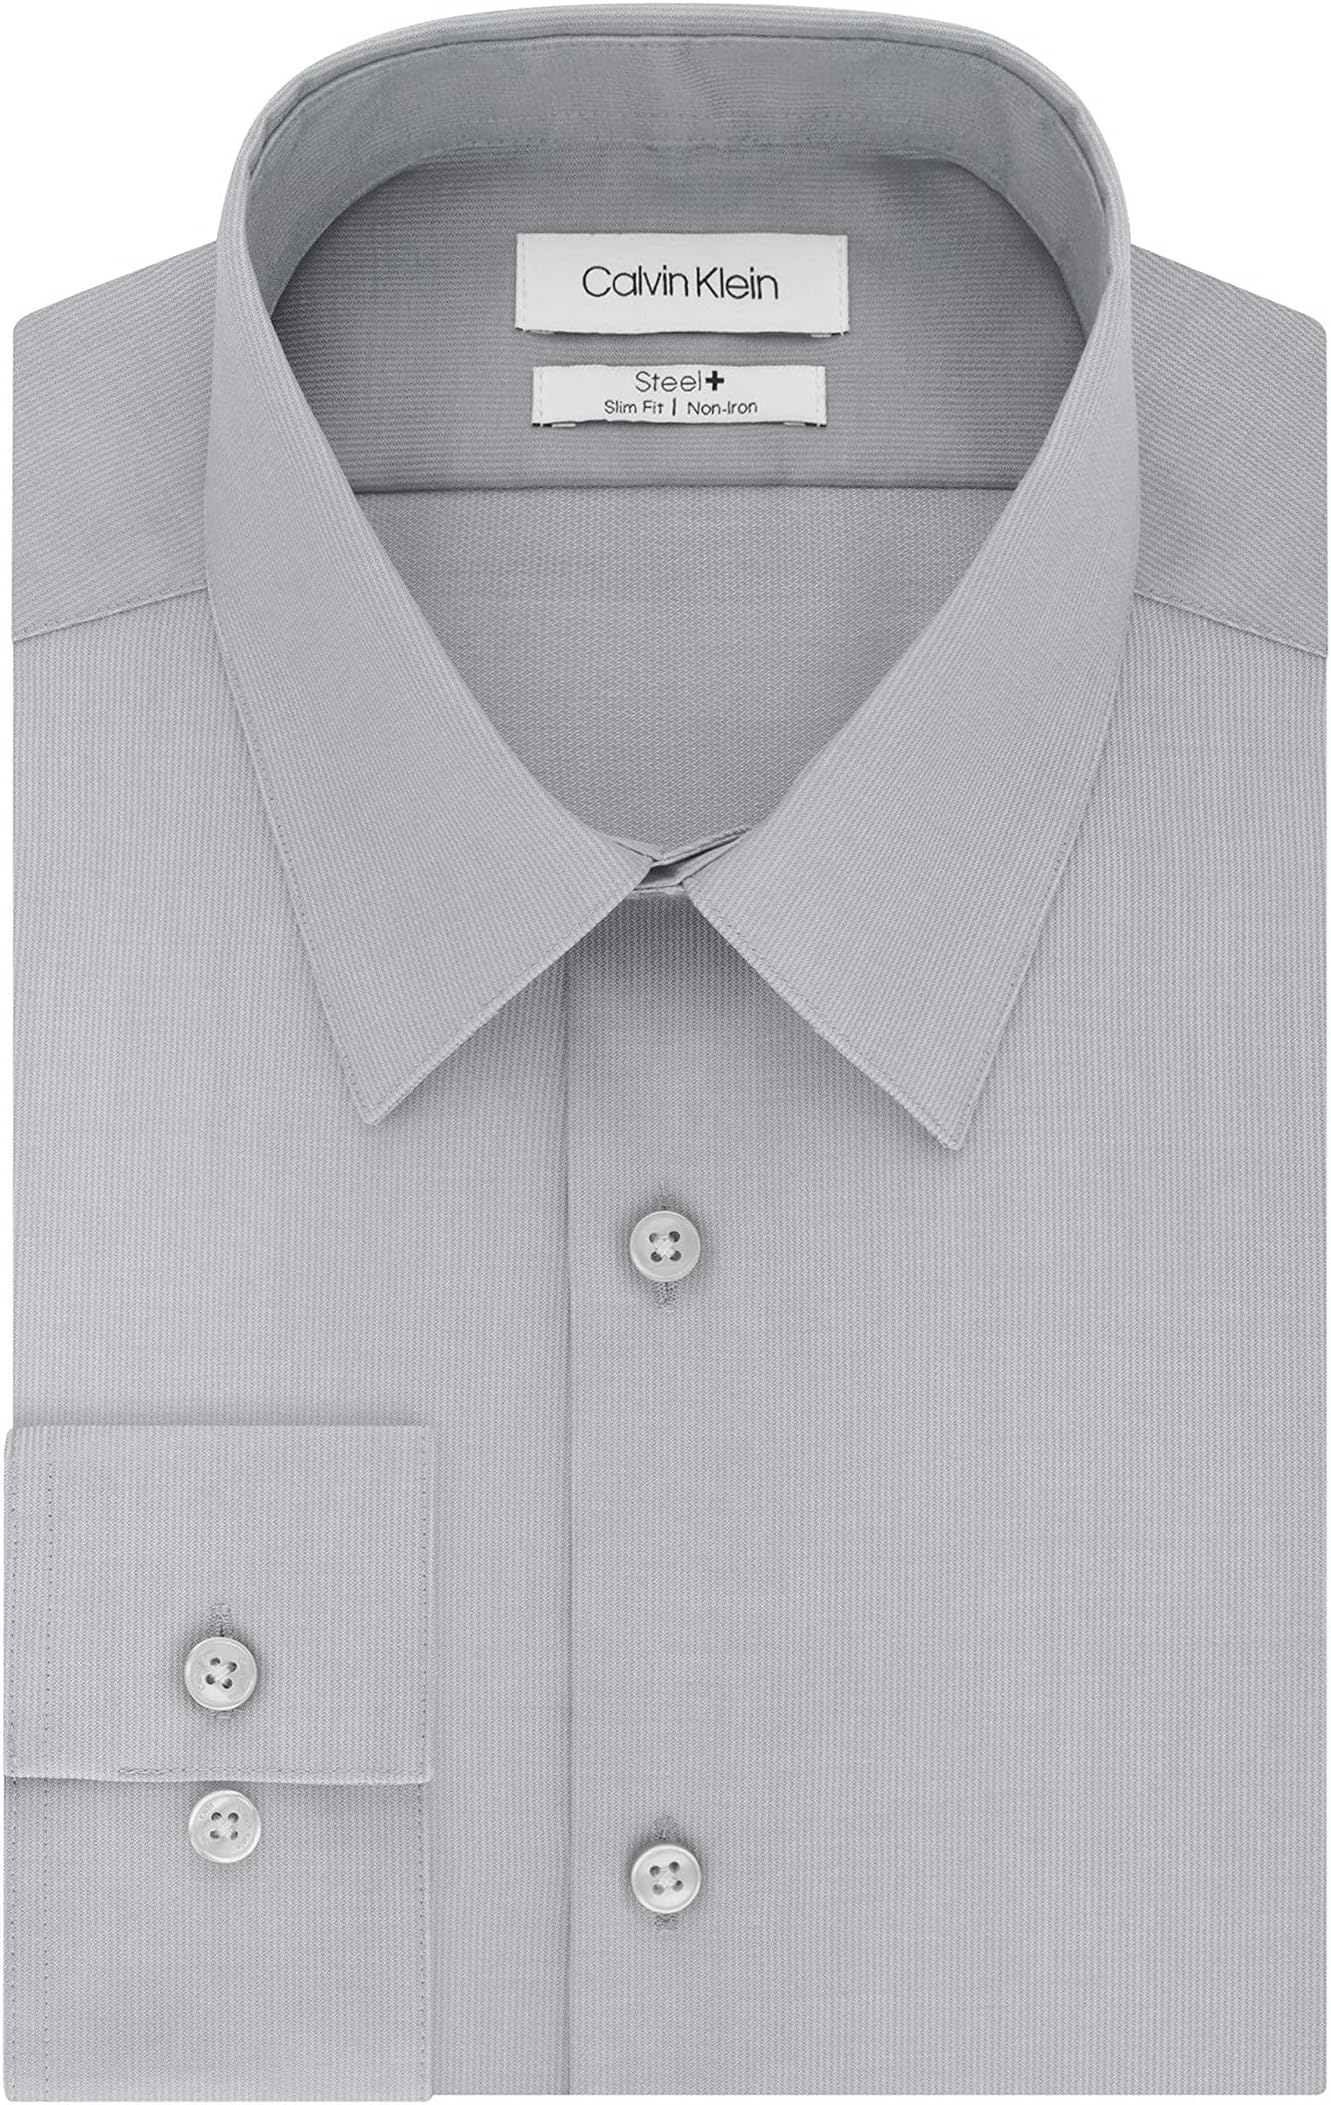 цена Мужские классические рубашки приталенного кроя без железа, однотонные Calvin Klein, цвет Cement